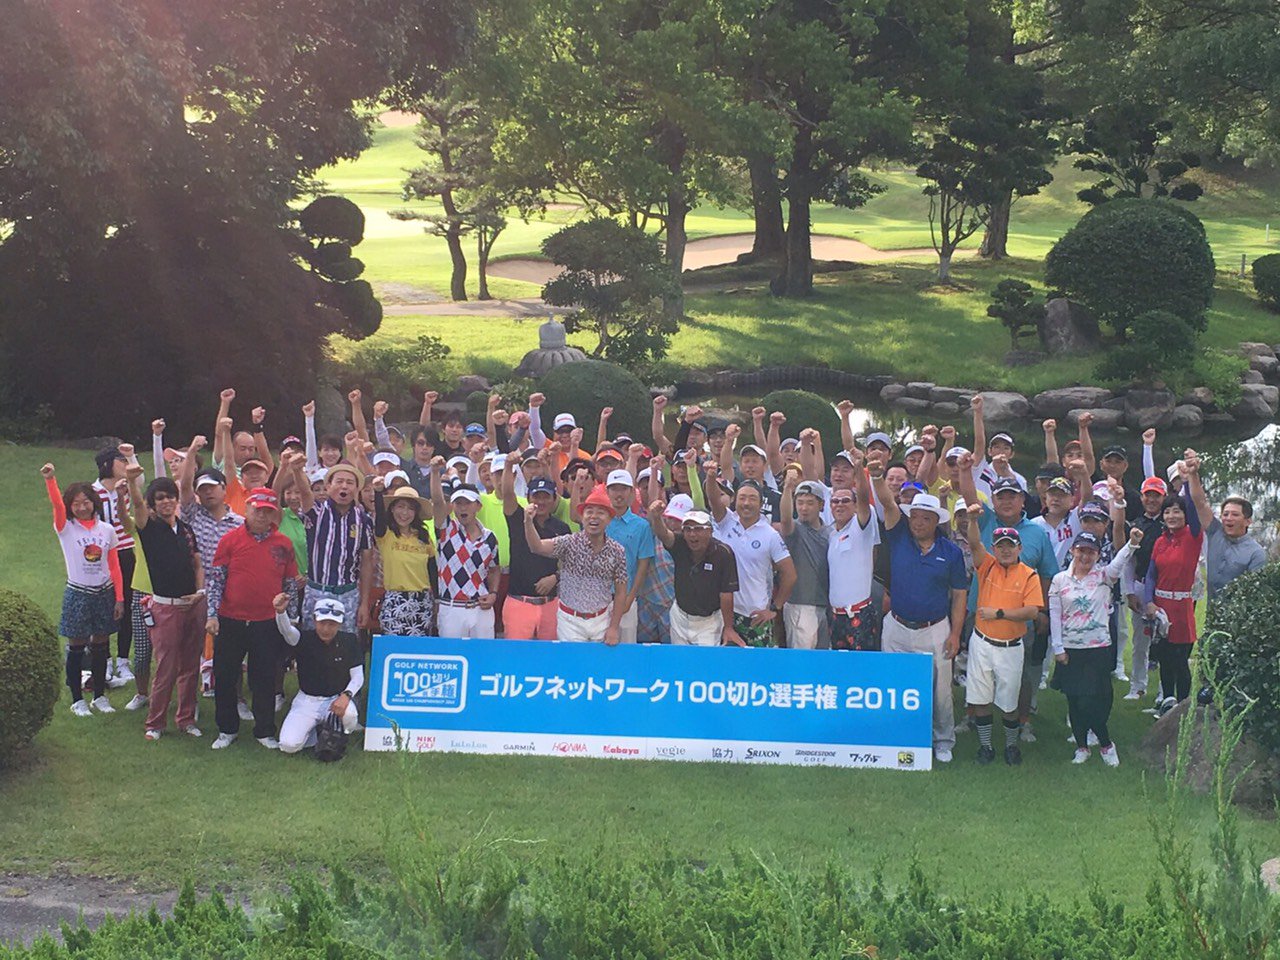 ゴルフネットワーク 100切り選手権 メジャー同週開催で熱いゴルフ界ですが 兵庫県 北六甲カントリー倶楽部でも100切りをかけた熱い戦いが始まりました T Co Ljqpdjc6nx Golfnetwork